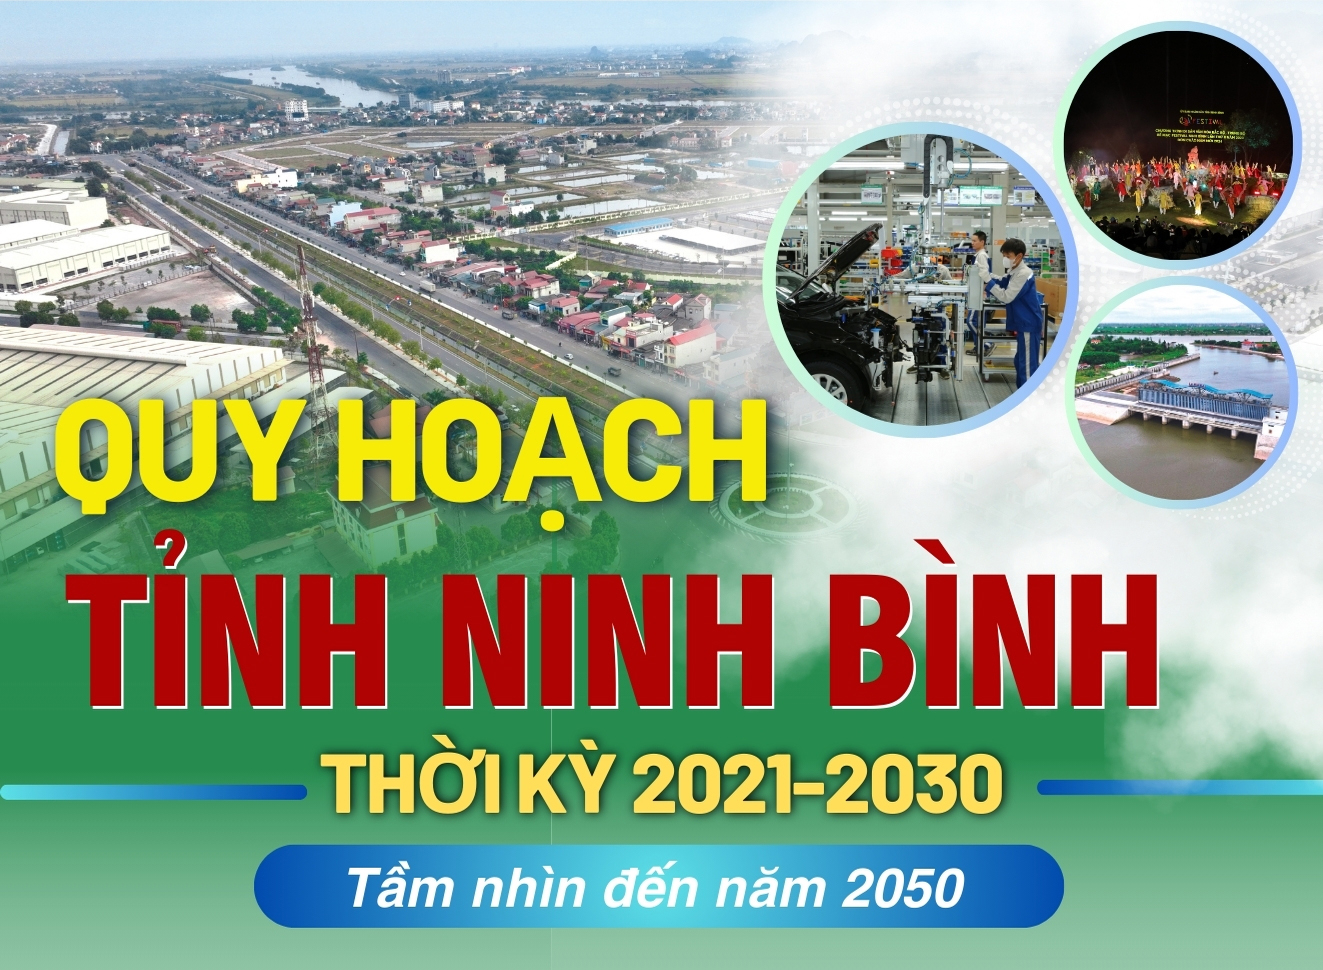 [Infographic] Quy hoạch tỉnh Ninh Bình thời kỳ 2021-2030, tầm nhìn đến năm 2050